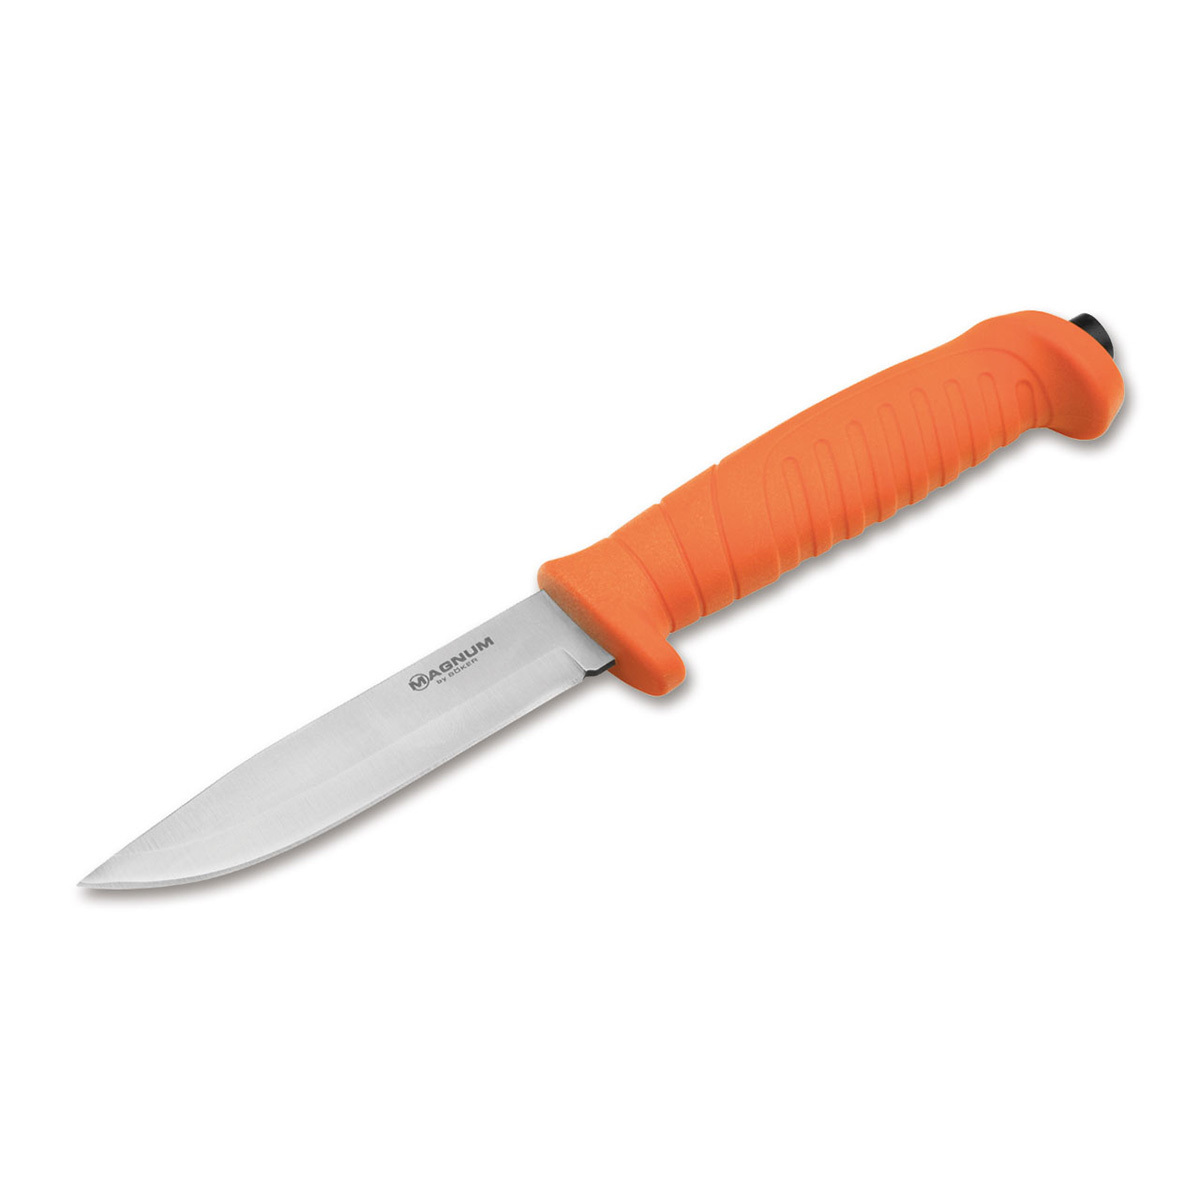 Нож с фиксированным клинком Boker Knivgar Sar Orange, сталь 420A, рукоять пластик нож с фиксированным клинком ontario rd4 micarta серрейтор